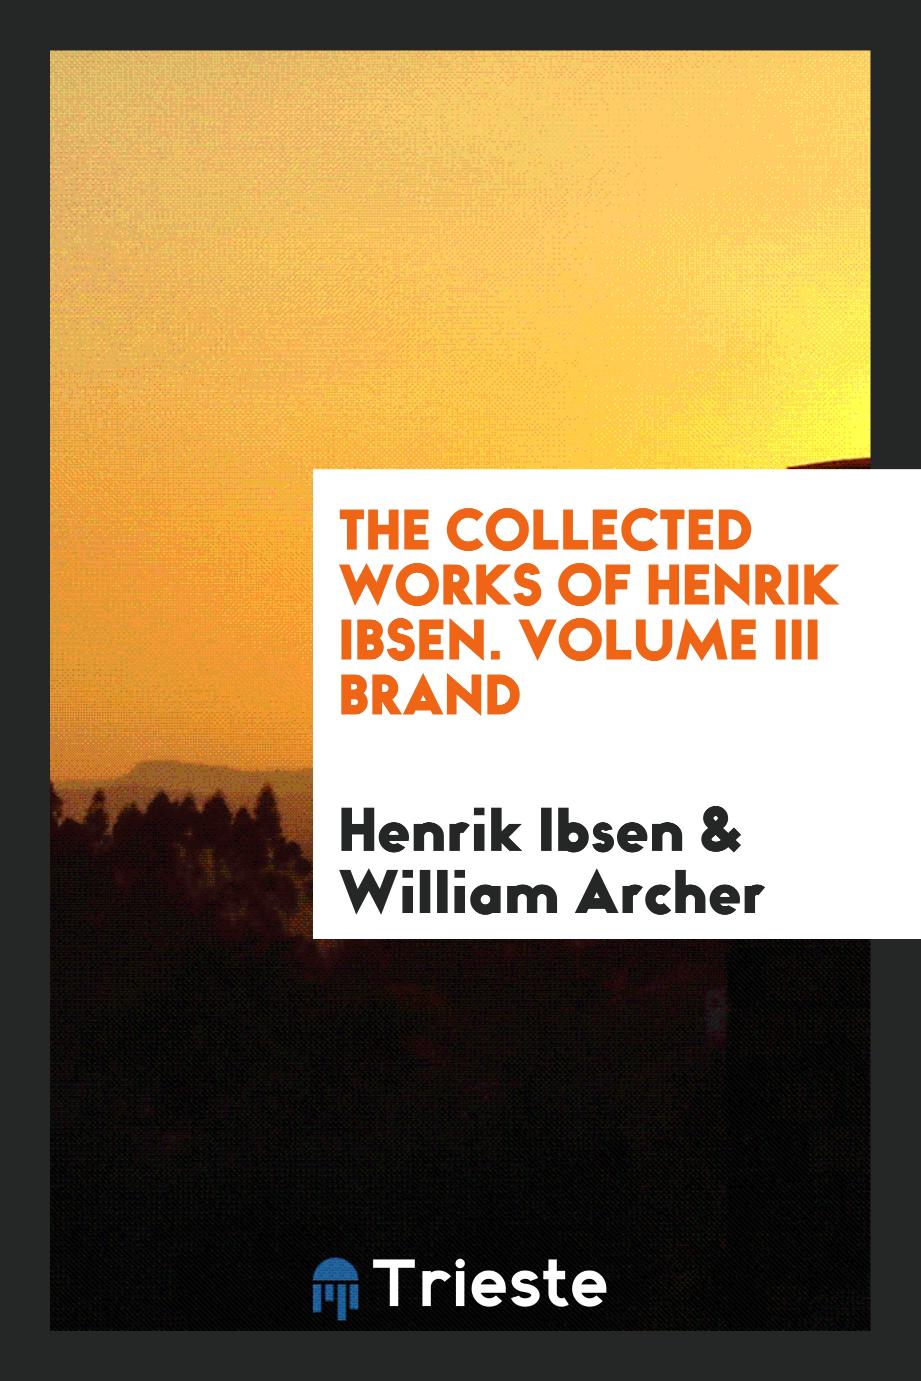 The collected works of Henrik Ibsen. Volume III Brand